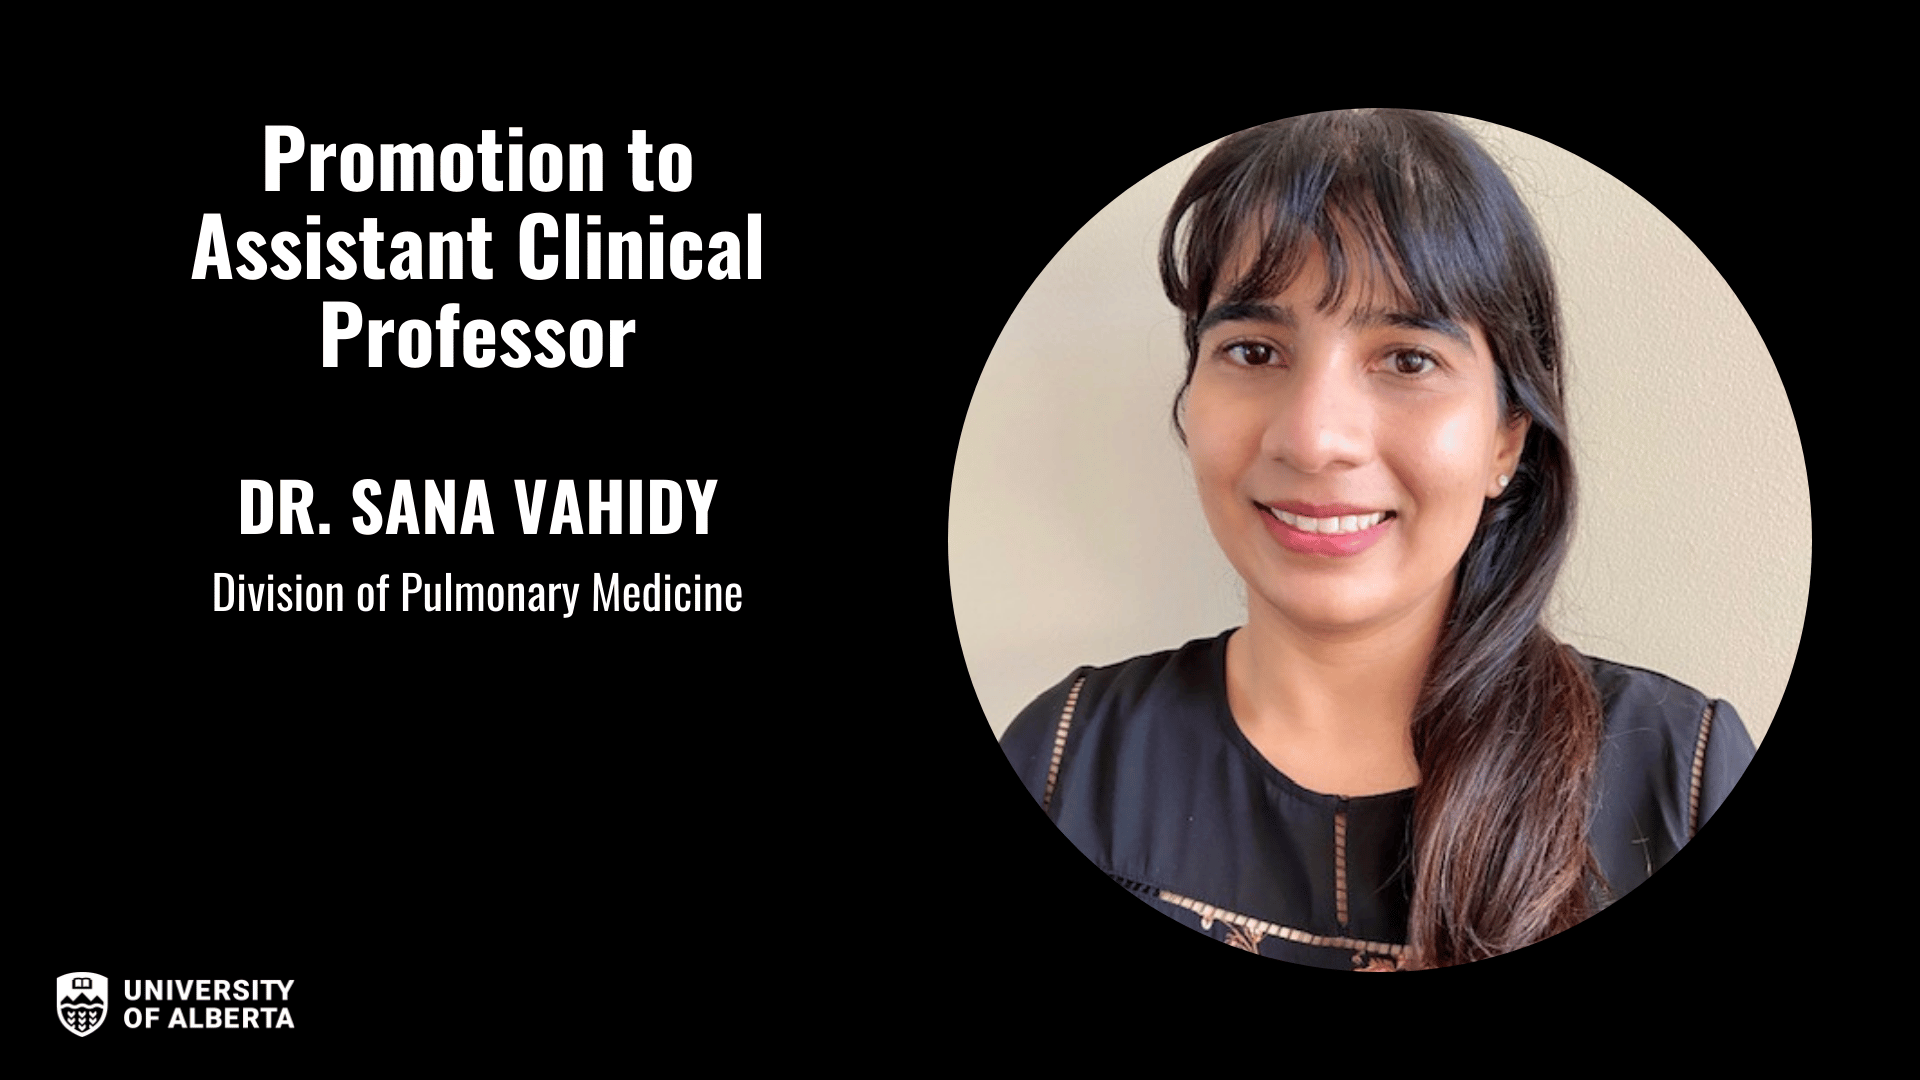 Dr. Sana Vahidy